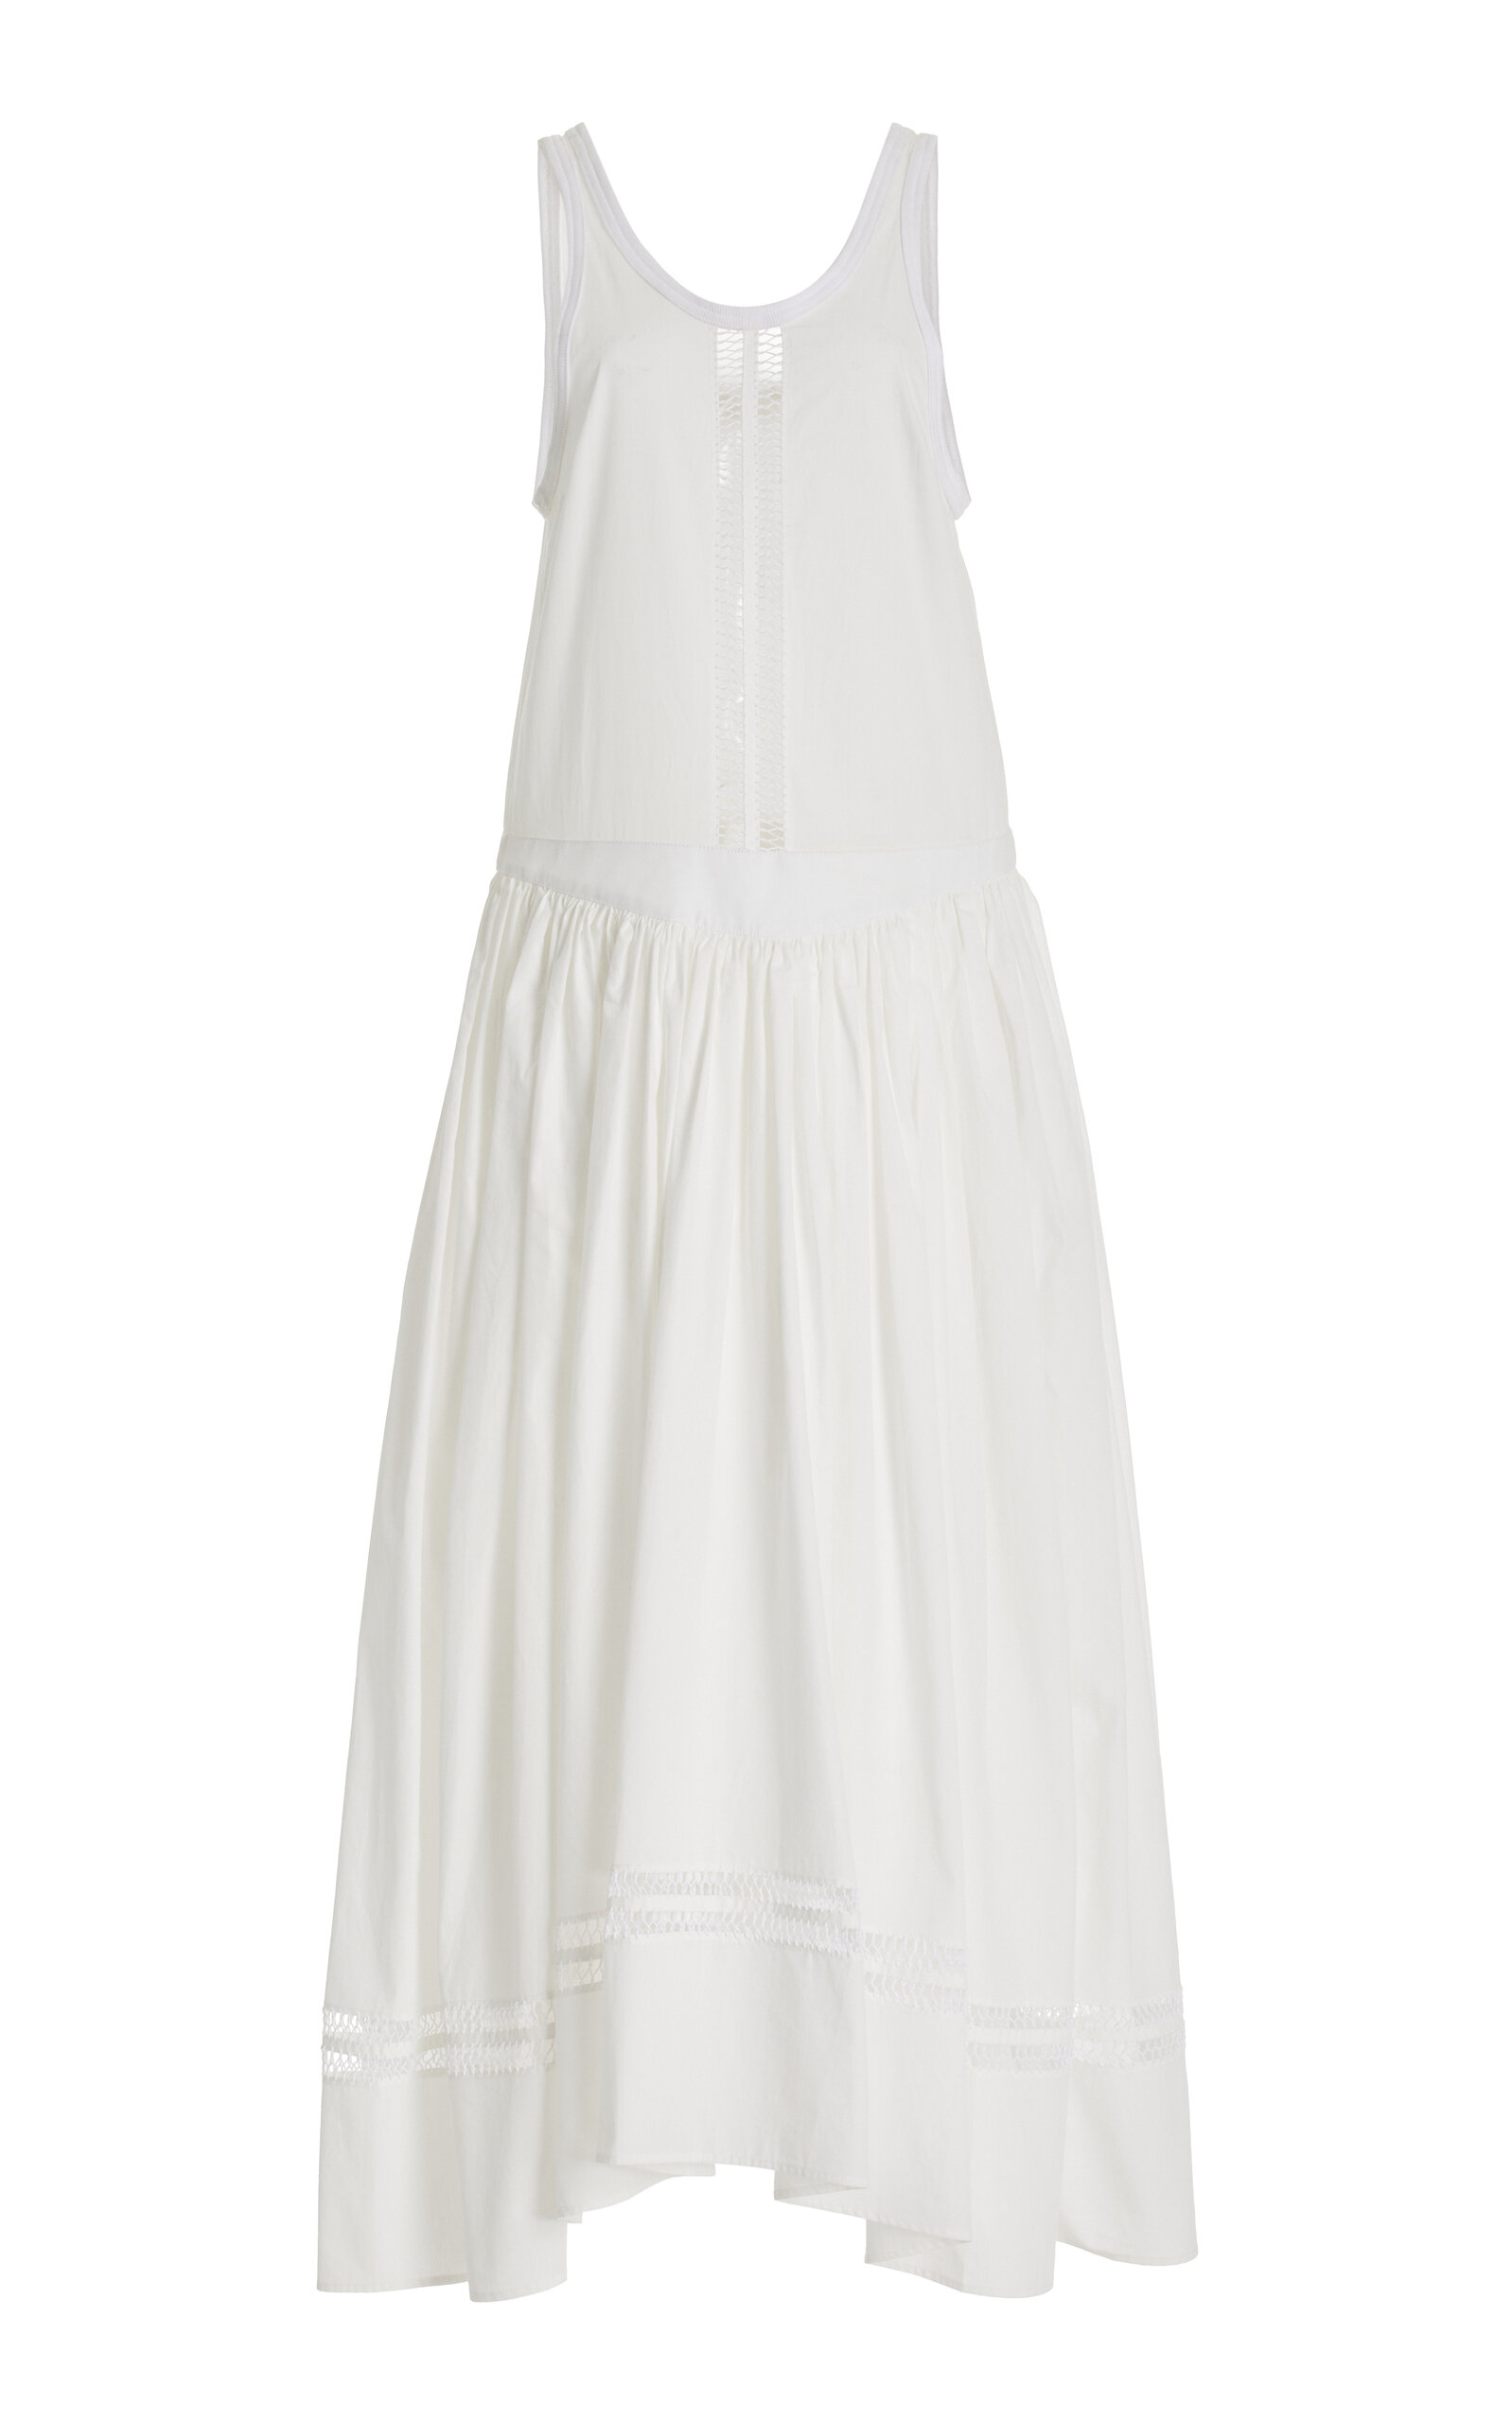 Pocomania Hand-Embroidered Cotton Maxi Dress